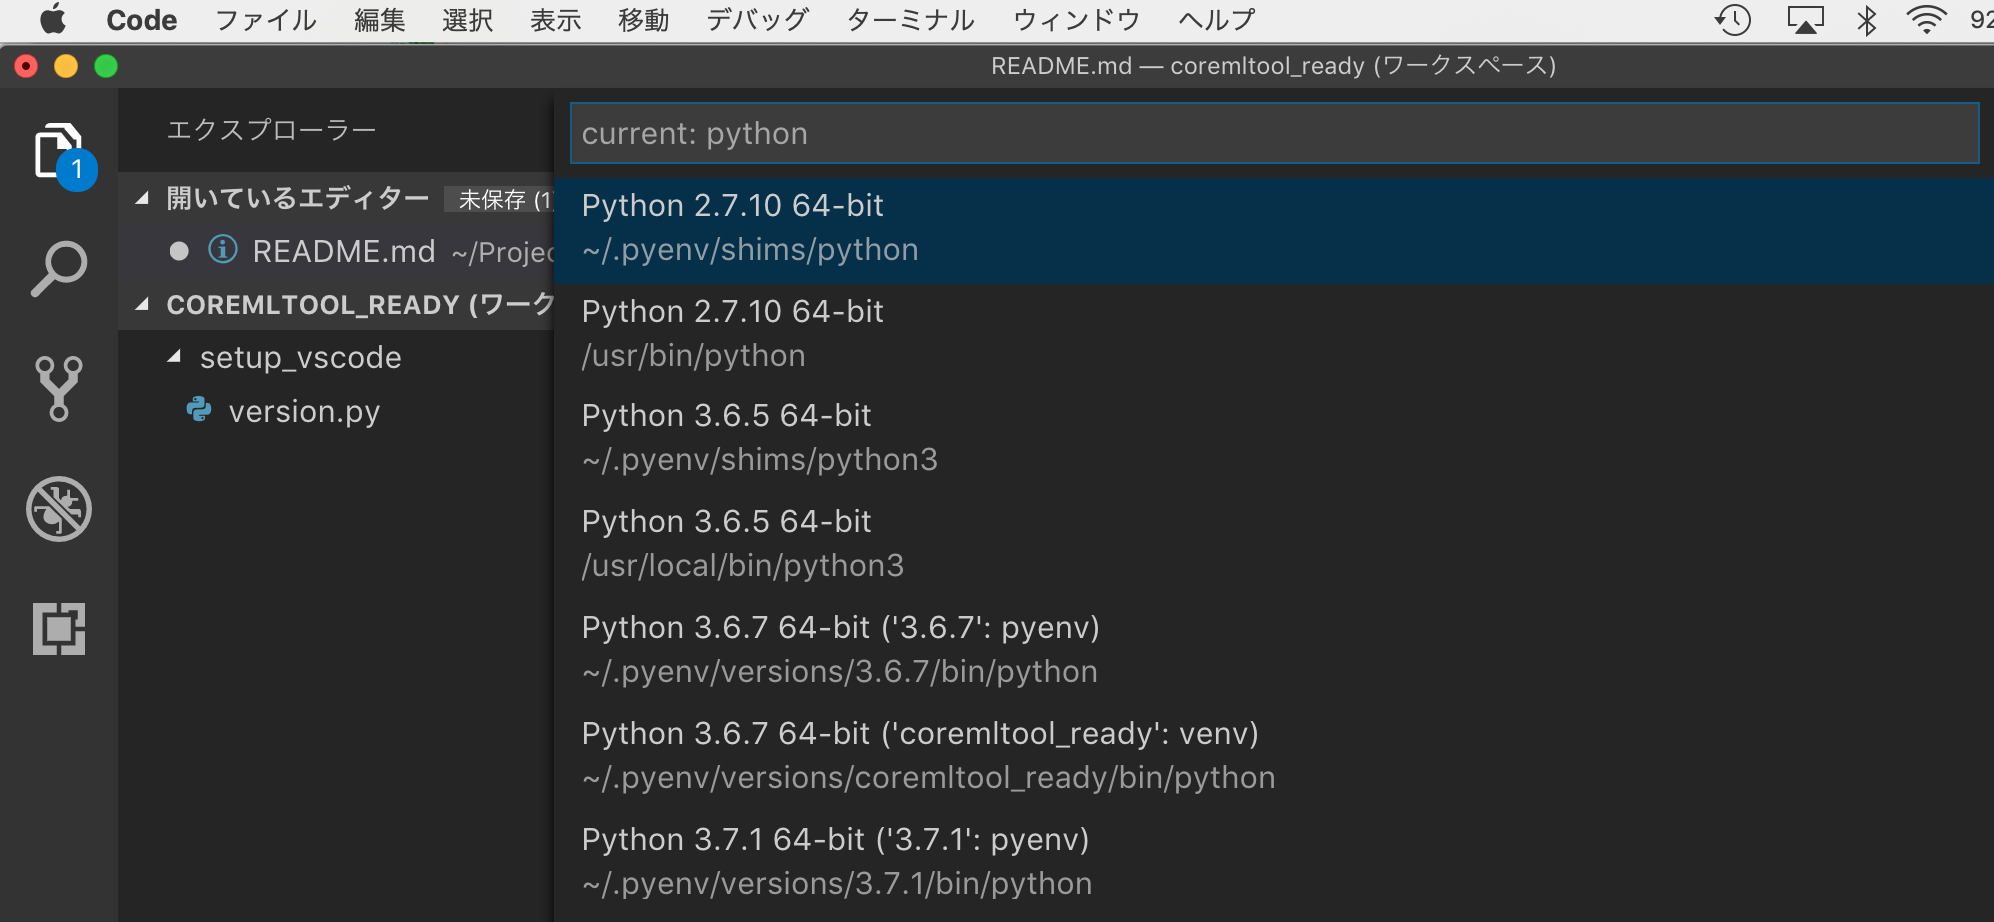 select_python_list.png